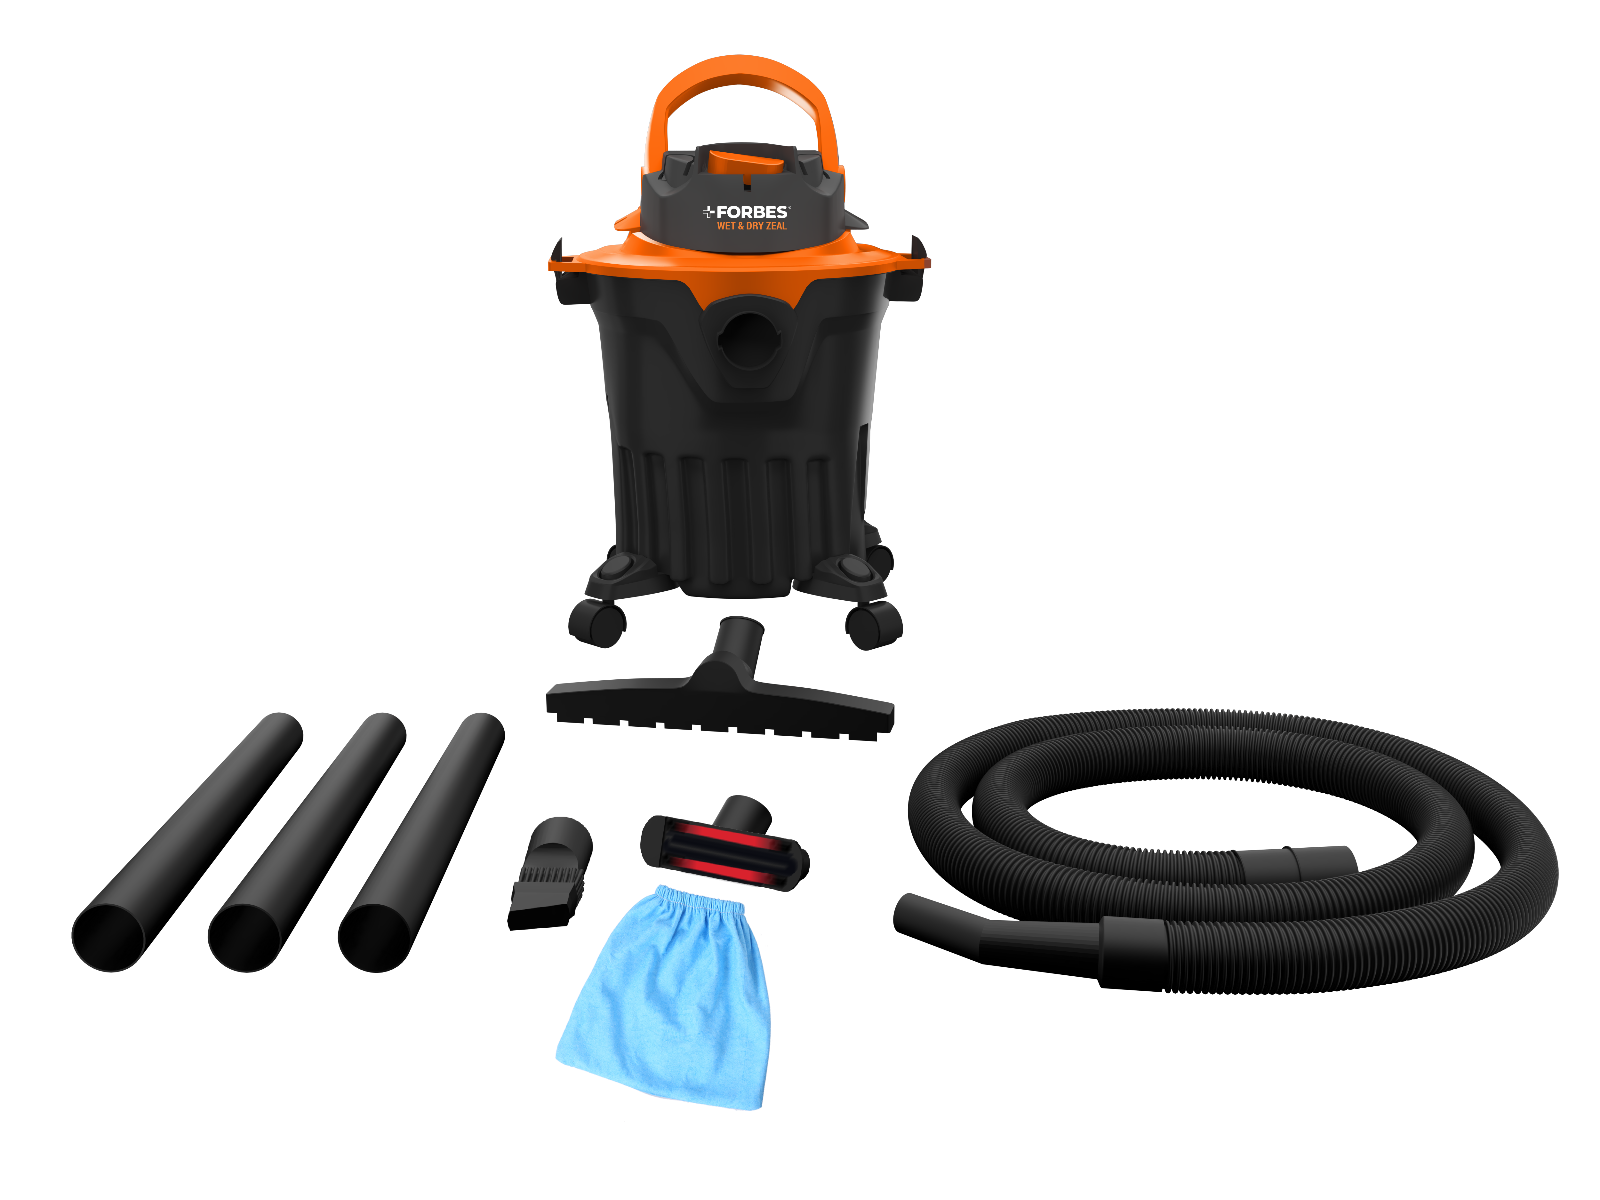 Eureka Forbes Wet & Dry Zeal Vacuum Cleaner